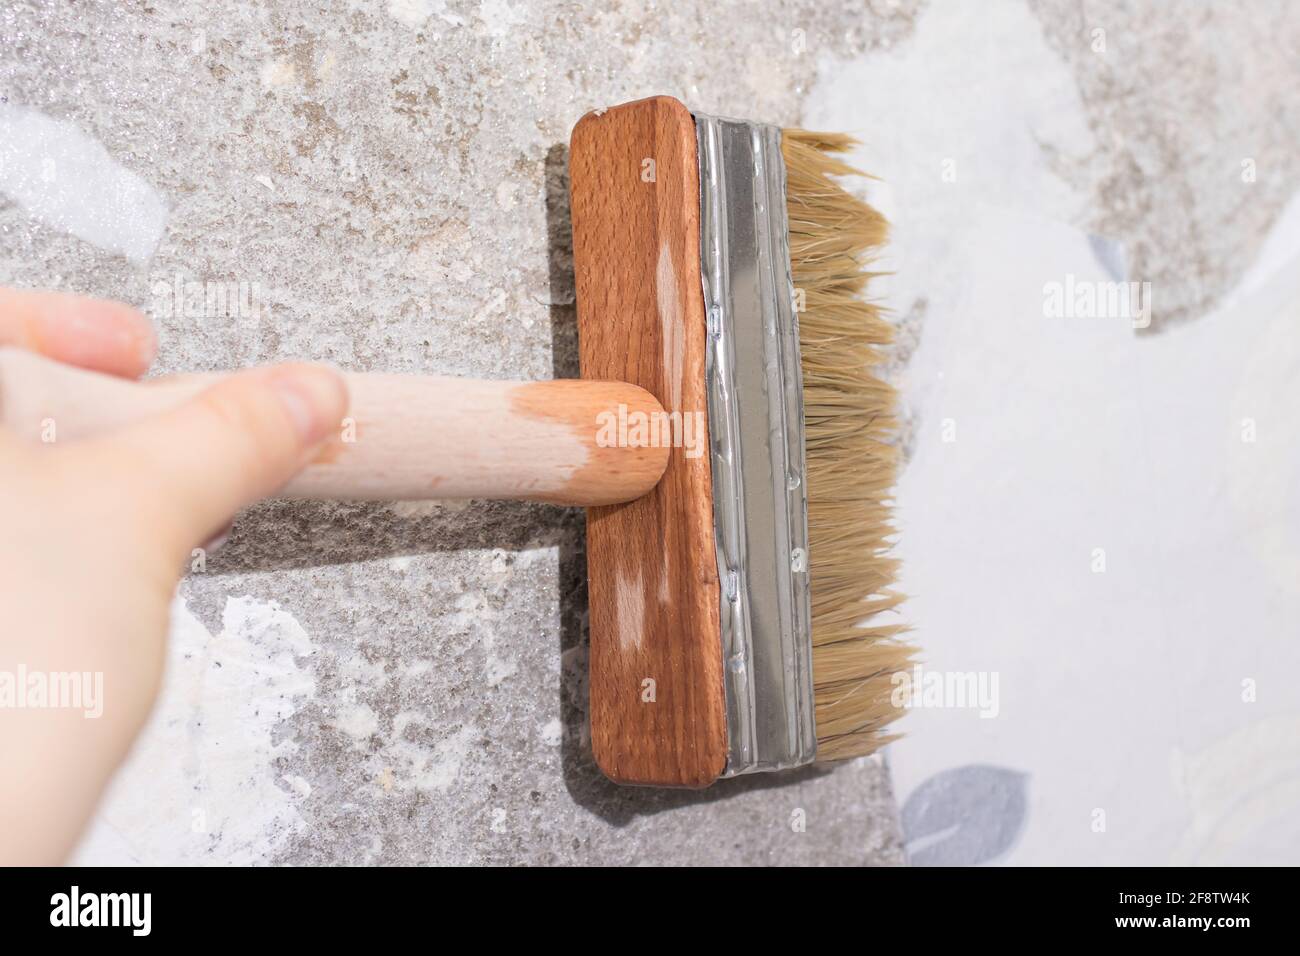 Le réparateur pare le vieux papier peint avec de l'eau à l'aide d'une brosse - une méthode de retrait de l'ancien papier peint du mur Banque D'Images